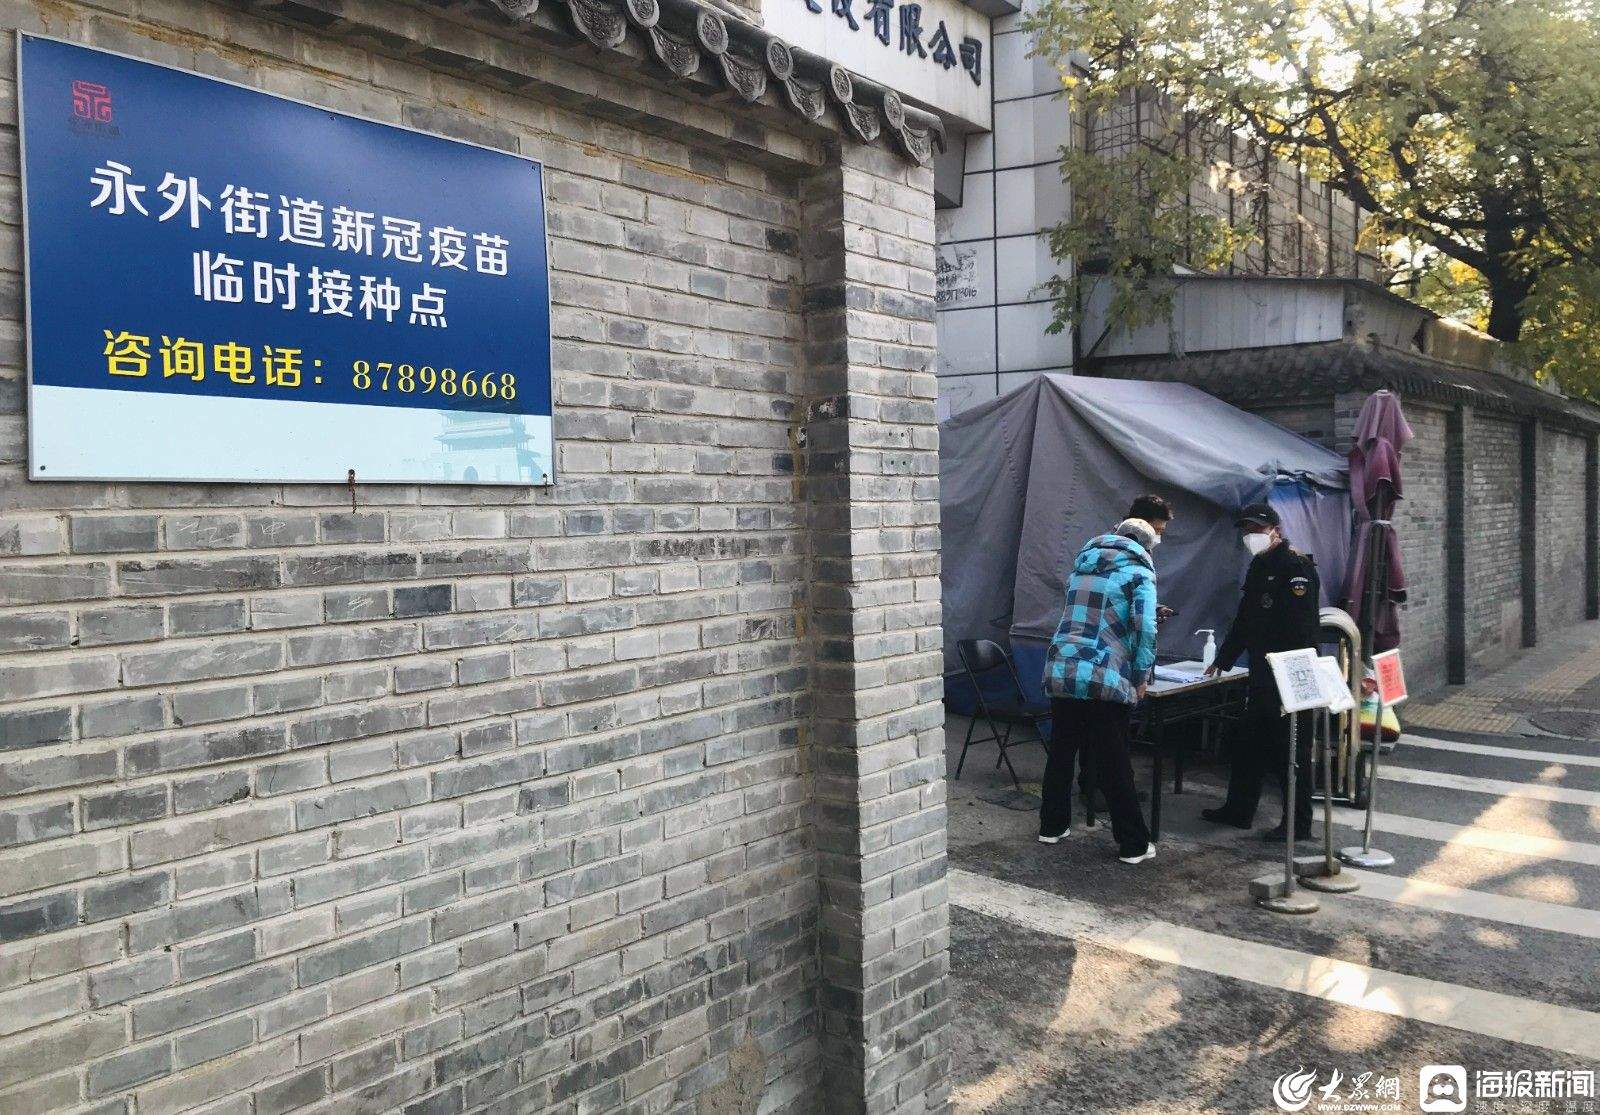 北京启动吸入用新冠疫苗接种接种者需提前预约